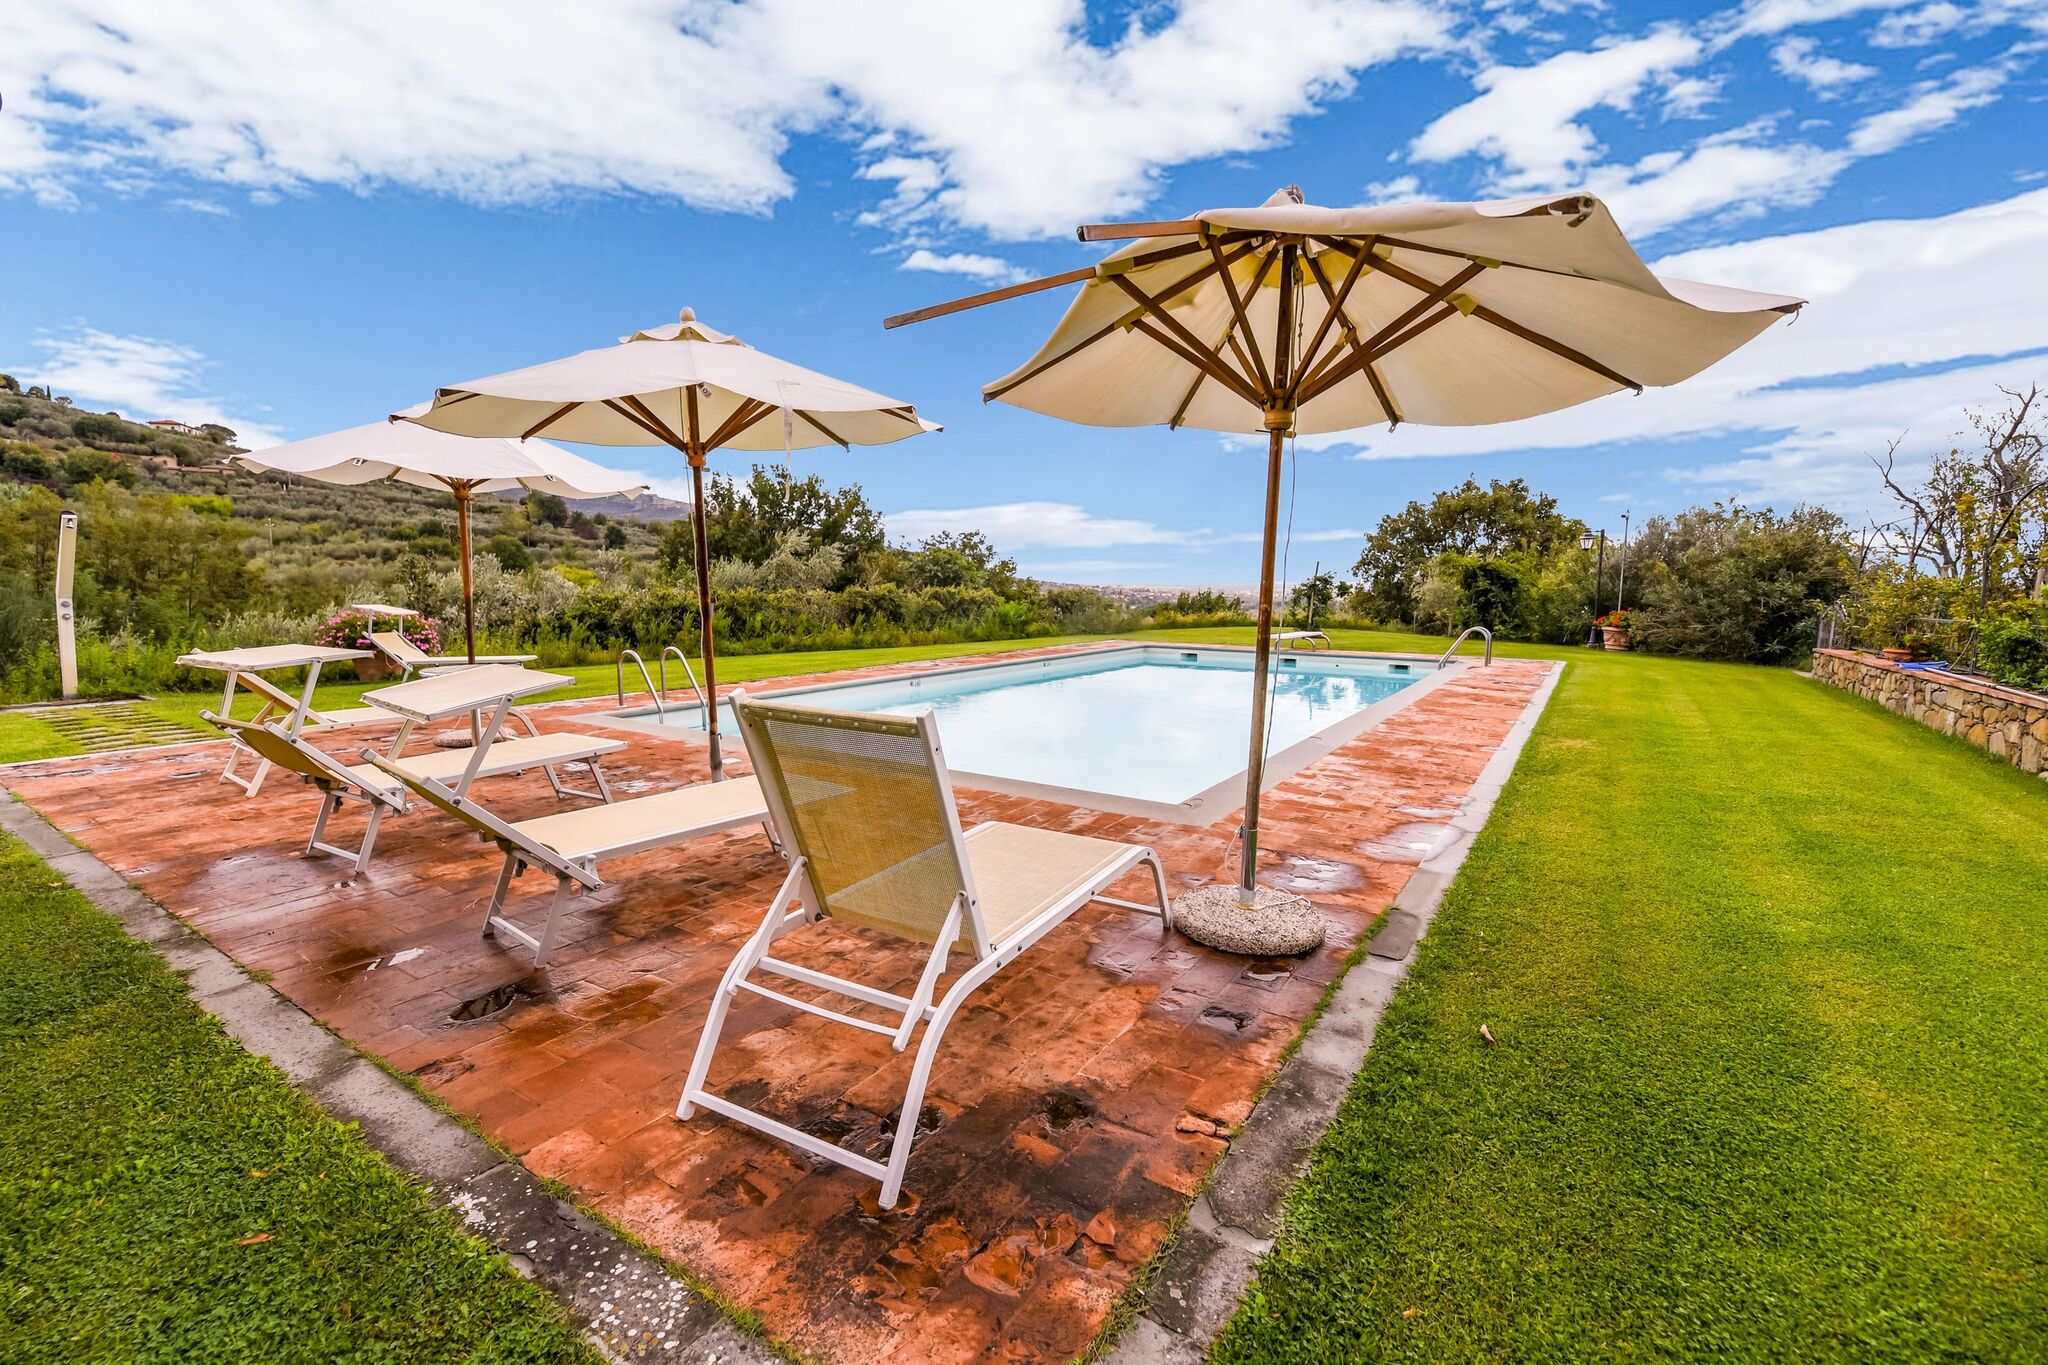 14-Personen-Villa in Cortona mit privatem Swimmingpool